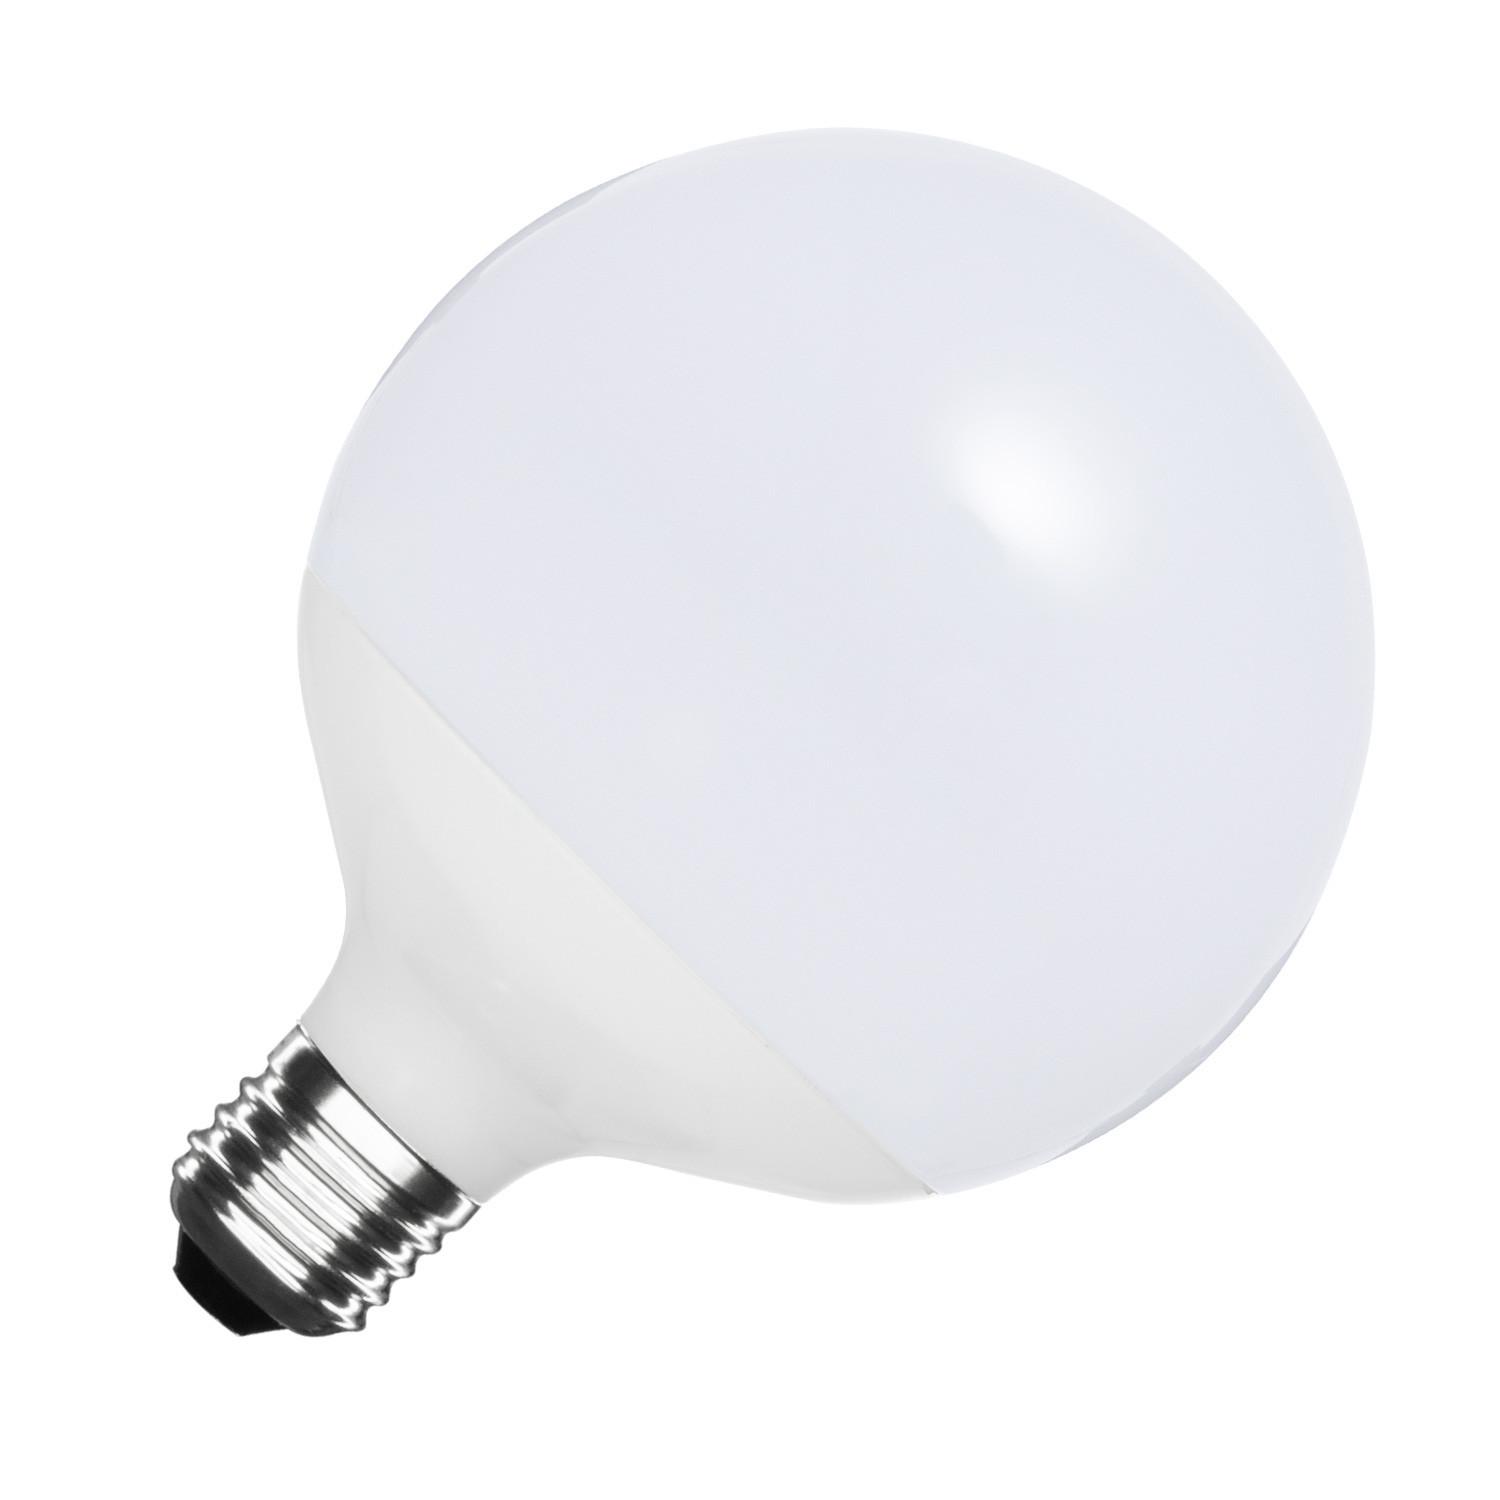 LED Lamp E27 1200 lm G120 - Ledkia